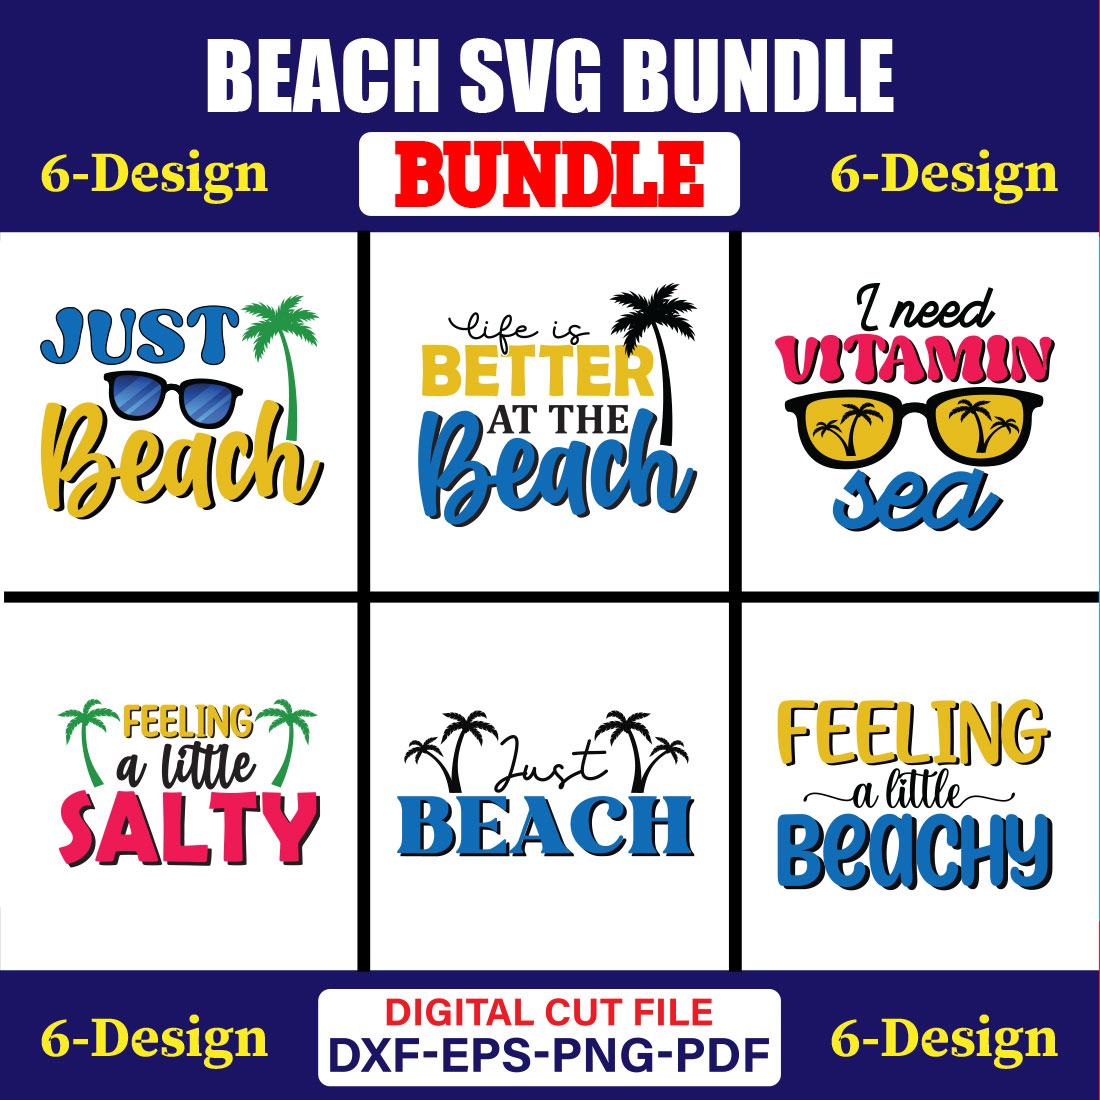 Beach SVG T-shirt Design Bundle Vol-02 cover image.